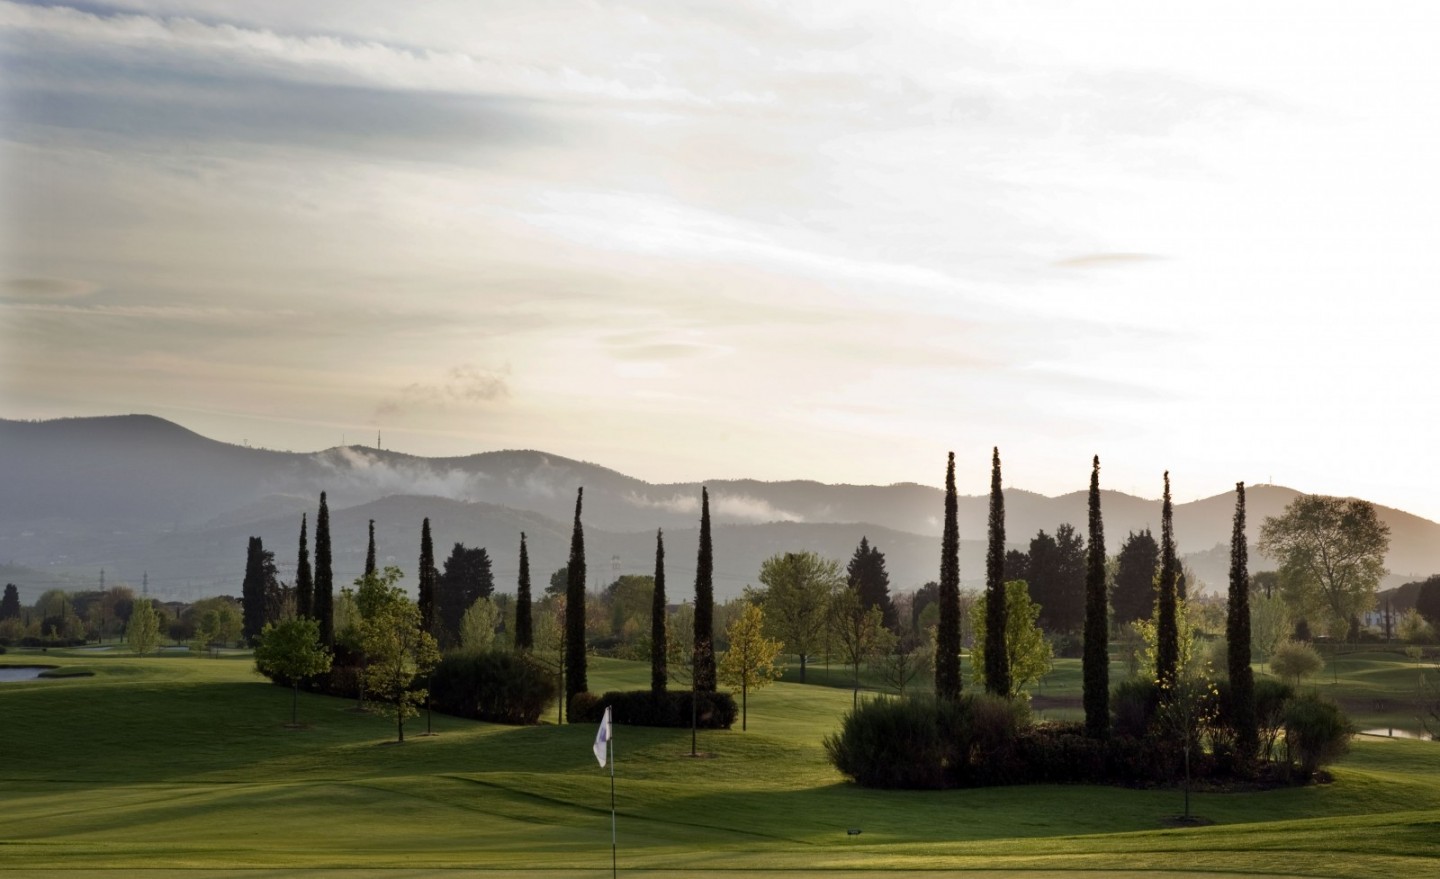 Il Golf Club Pavoniere, 18 buche, uno dei campi da golf più della Toscana, disegnato da Arnold Palmer, si trova in provincia di Prato a pochi km da Firenze